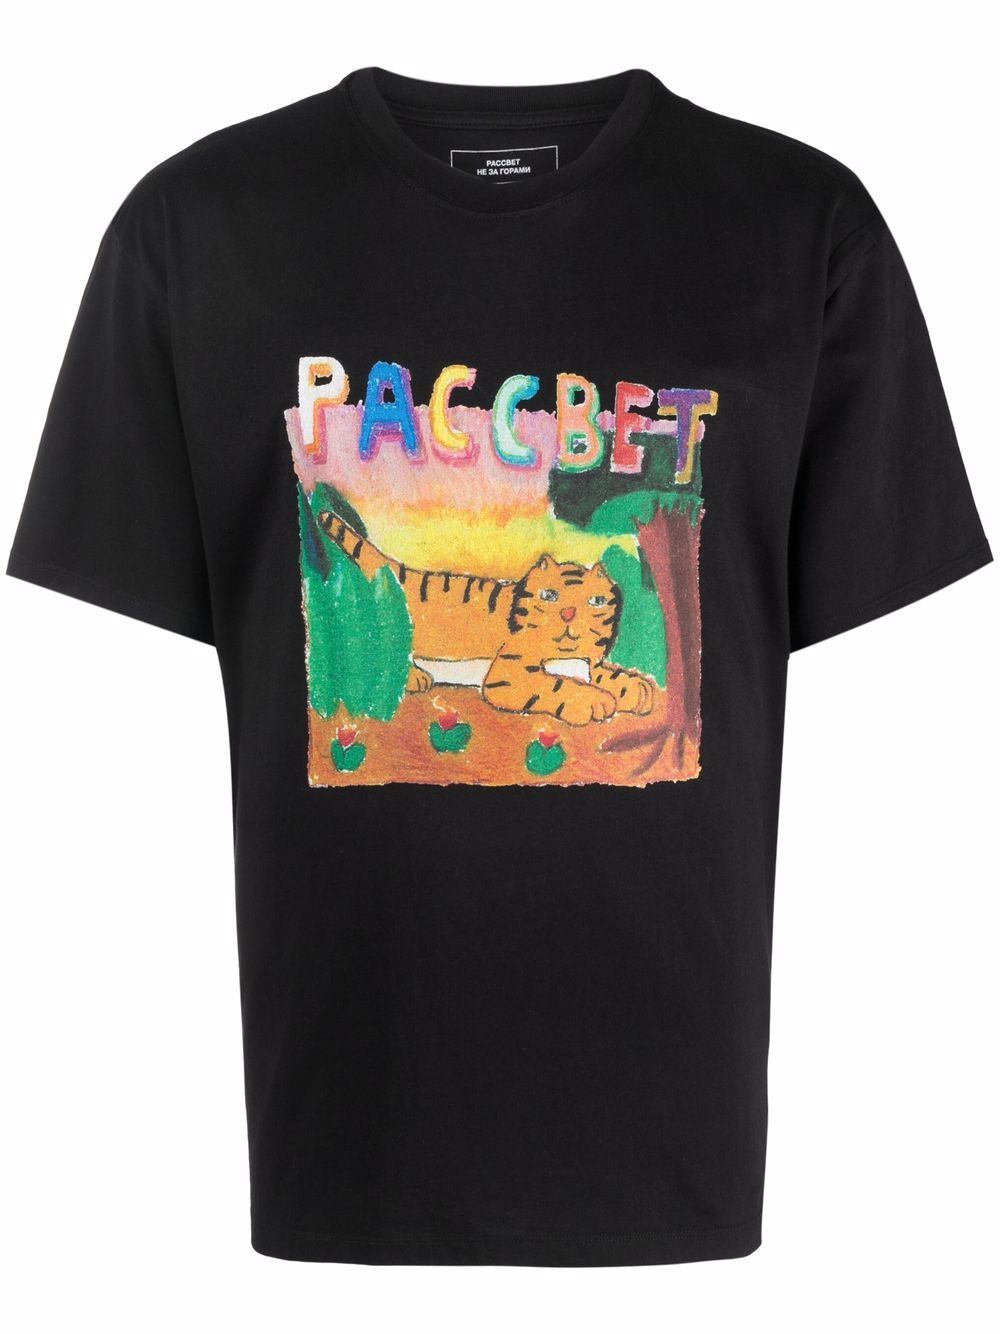 фото Paccbet футболка с логотипом